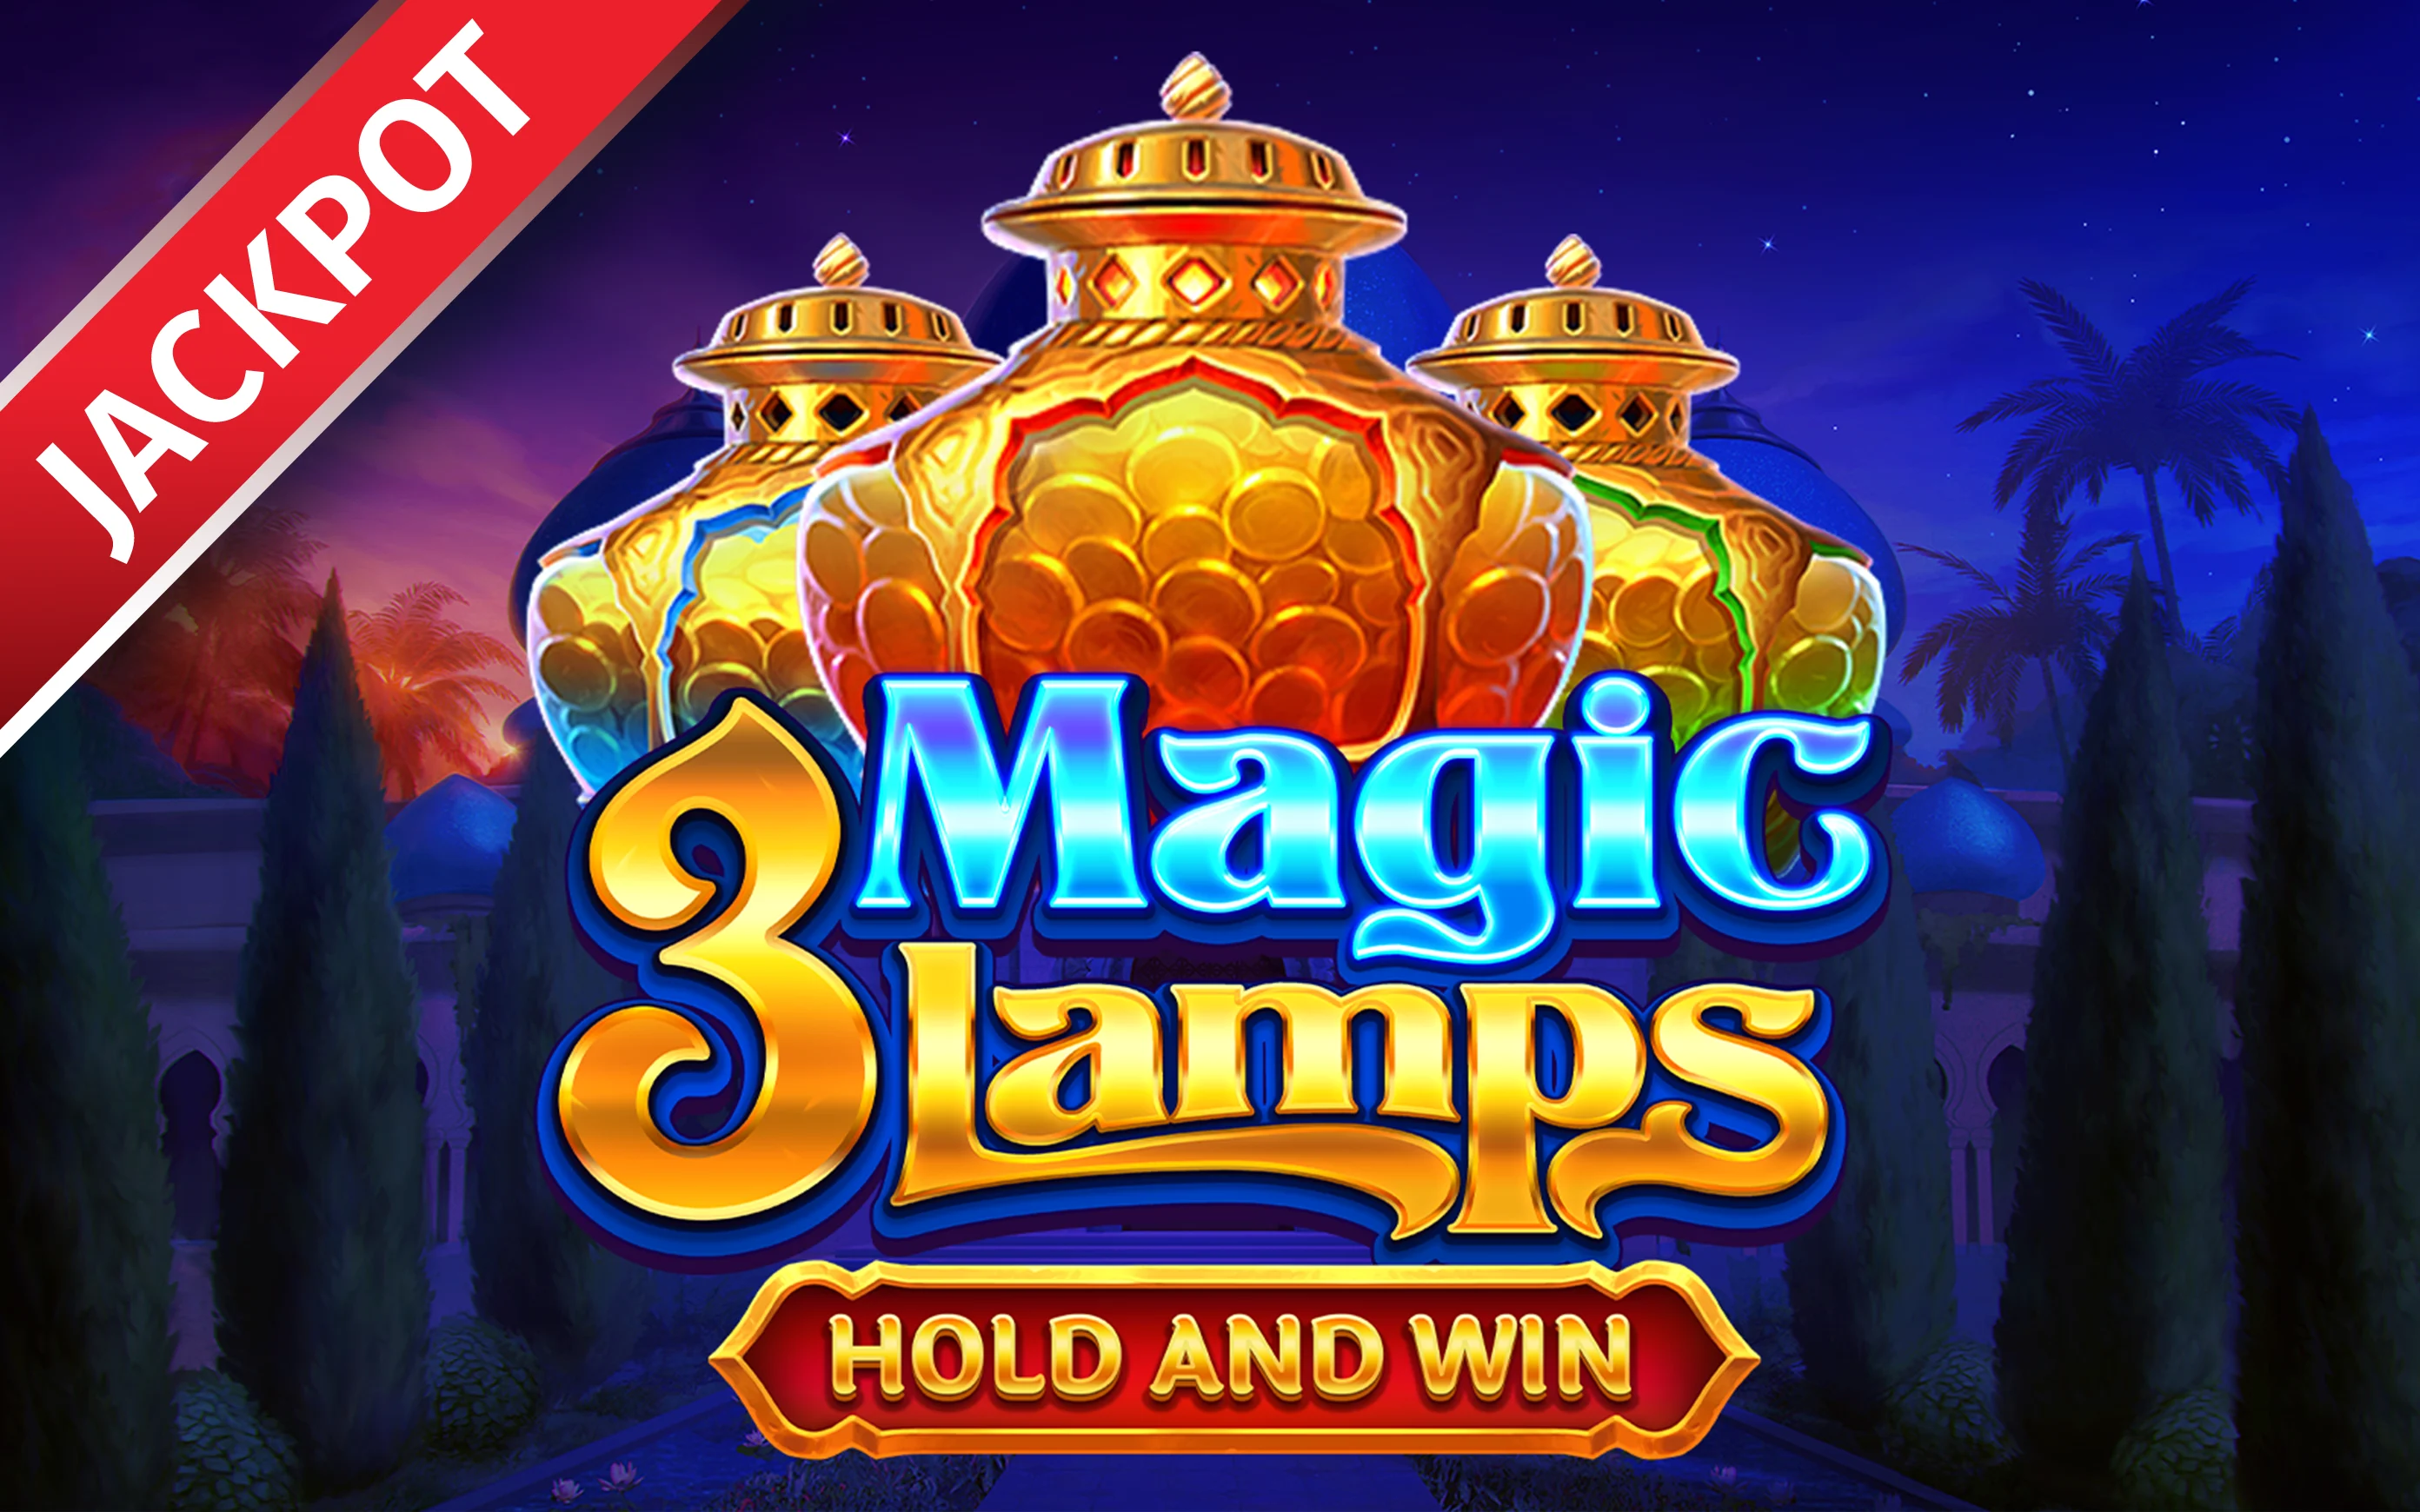 Gioca a 3 Magic Lamps: Hold and Win sul casino online Starcasino.be